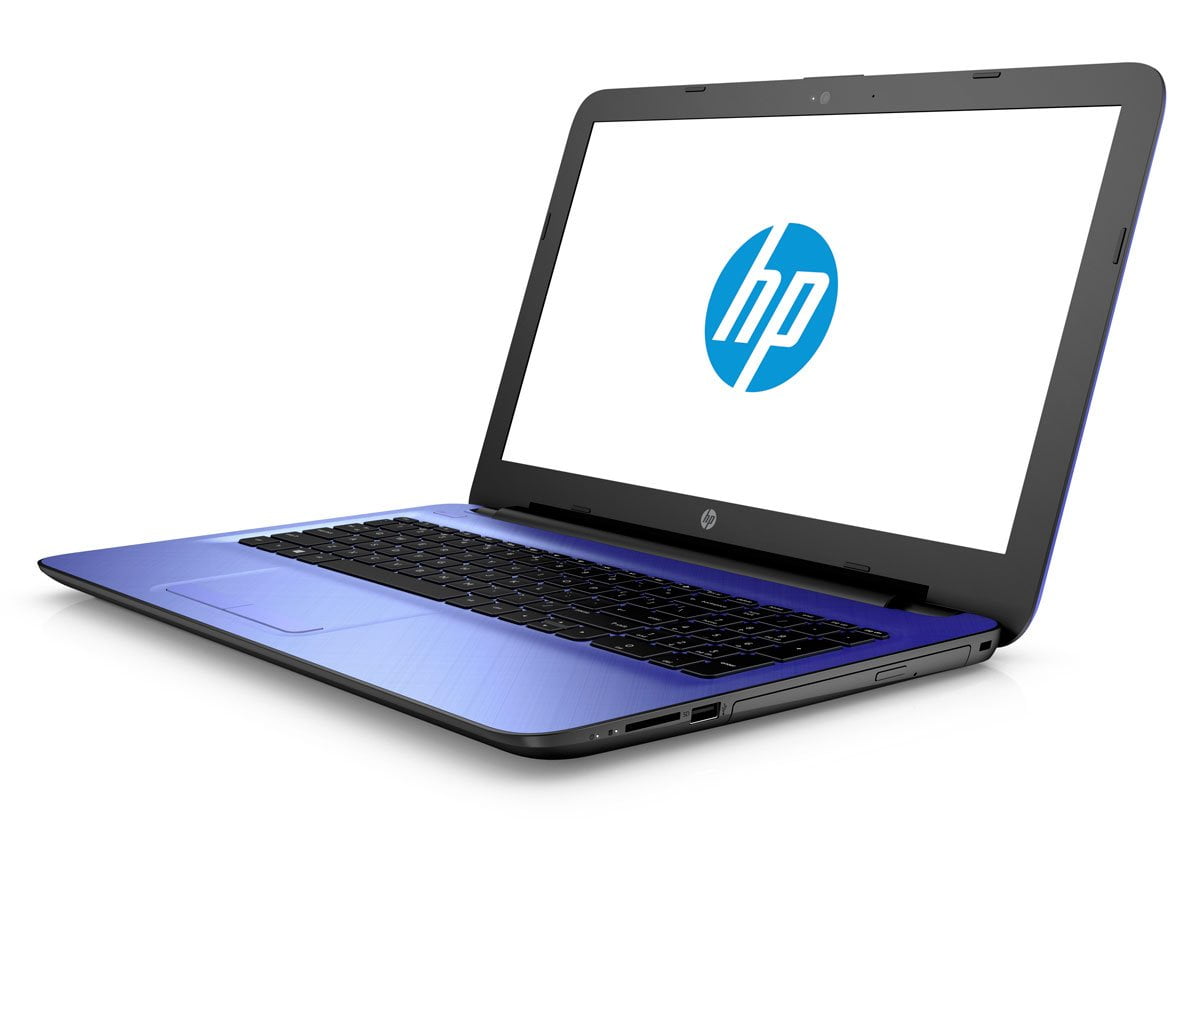 Tìm Laptop HP học lập trình giá dưới 10 triệu 4e197939-b3c1-4bff-9951-e37cb9ff8cb1_1.f052fa6a8f72a4368574251faea768cb